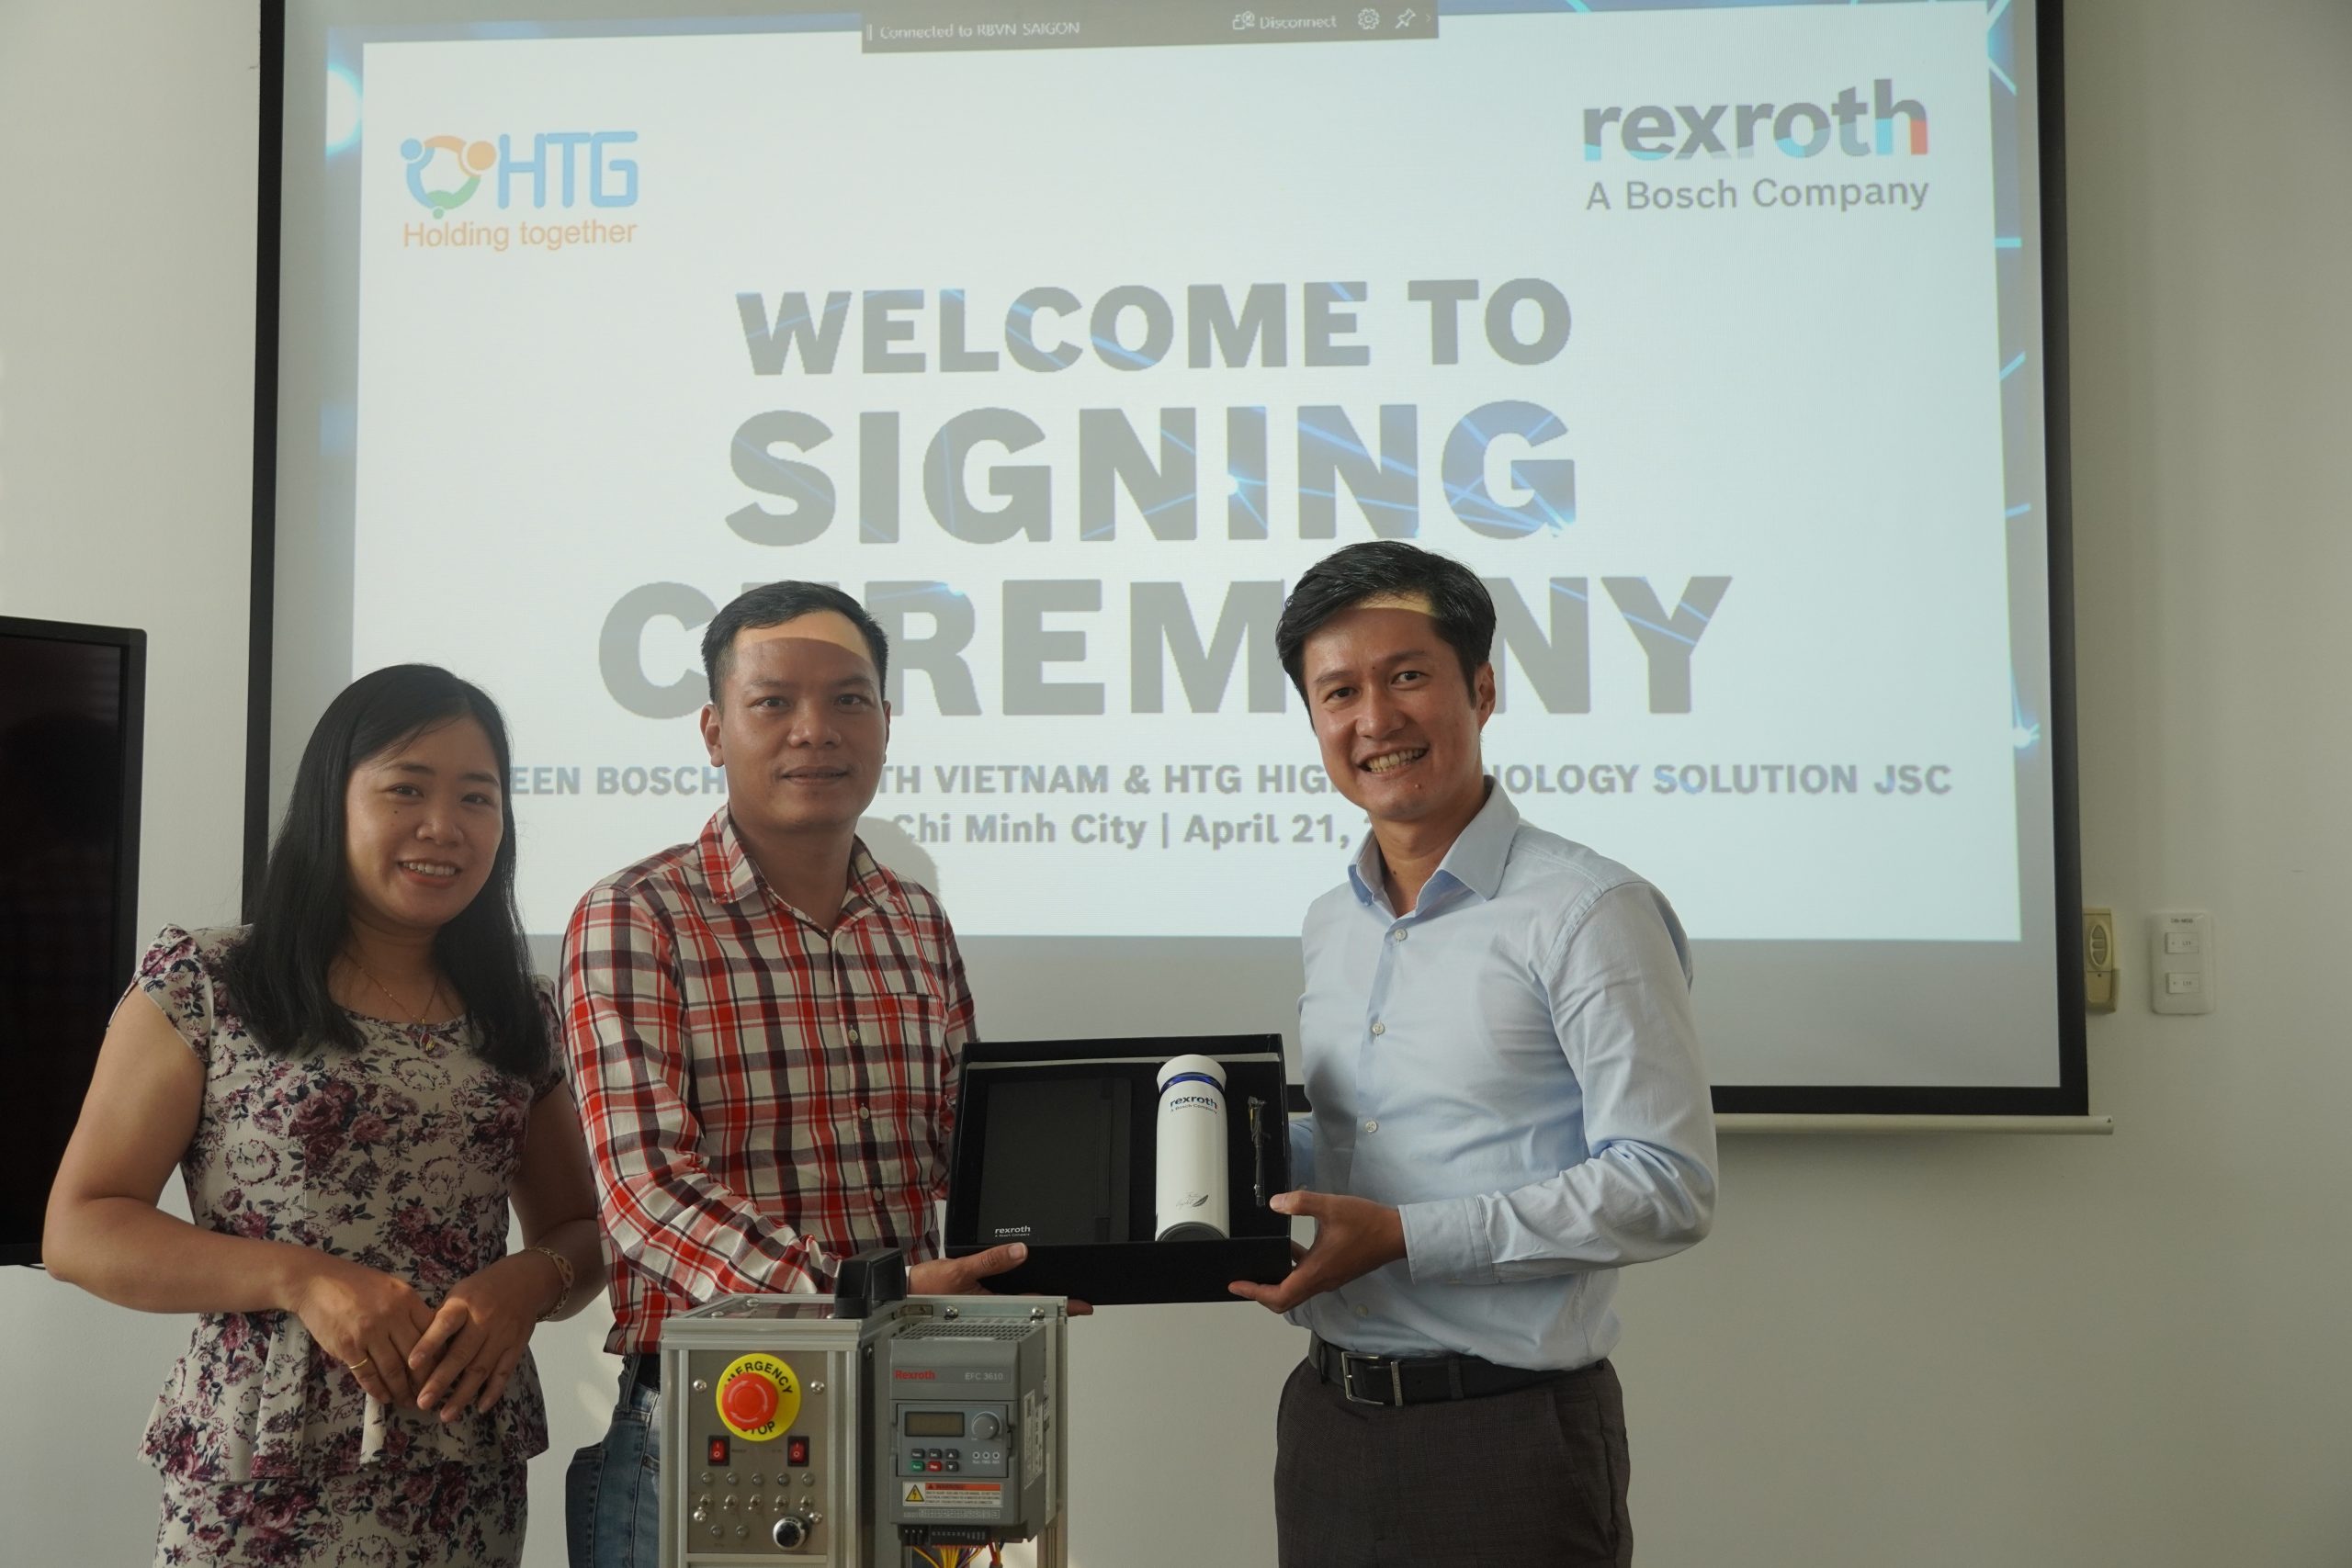 Ông Đoàn Linh Sơn (Chủ tịch HĐQT HTG Group) và Bà Vũ Thị Phương Thanh (Giám đốc HTG Group) nhận quà tặng kỷ niệm từ Bosch Rexroth